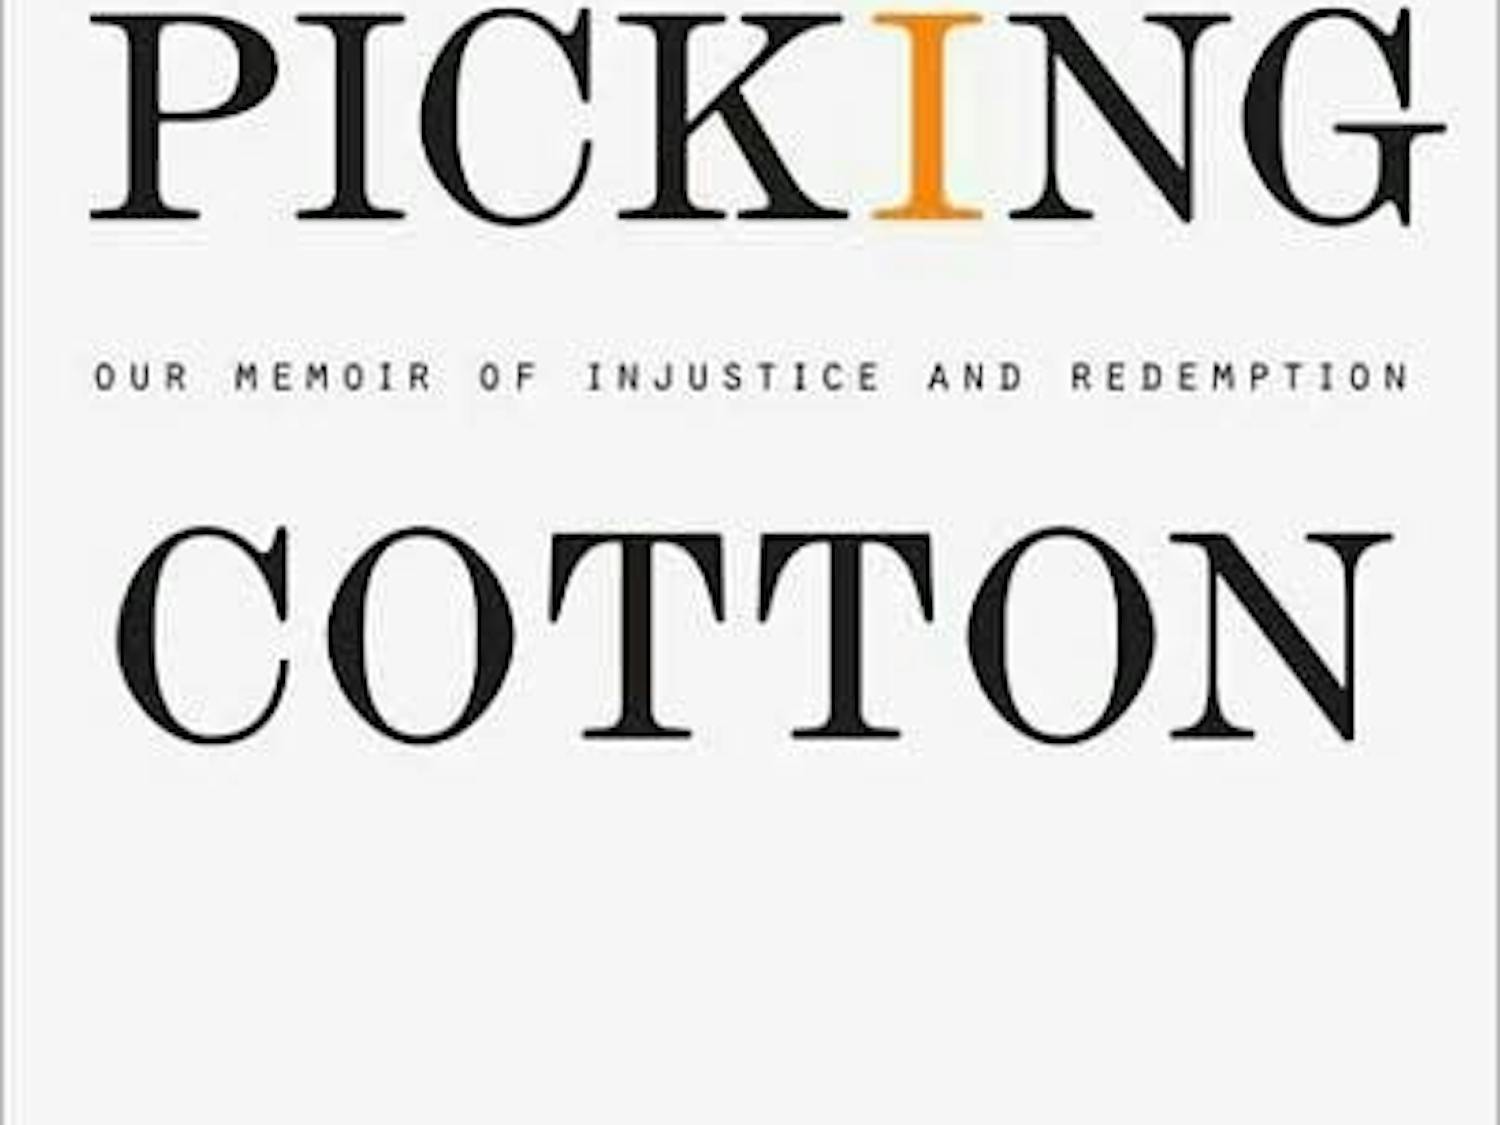 'Picking Cotton'